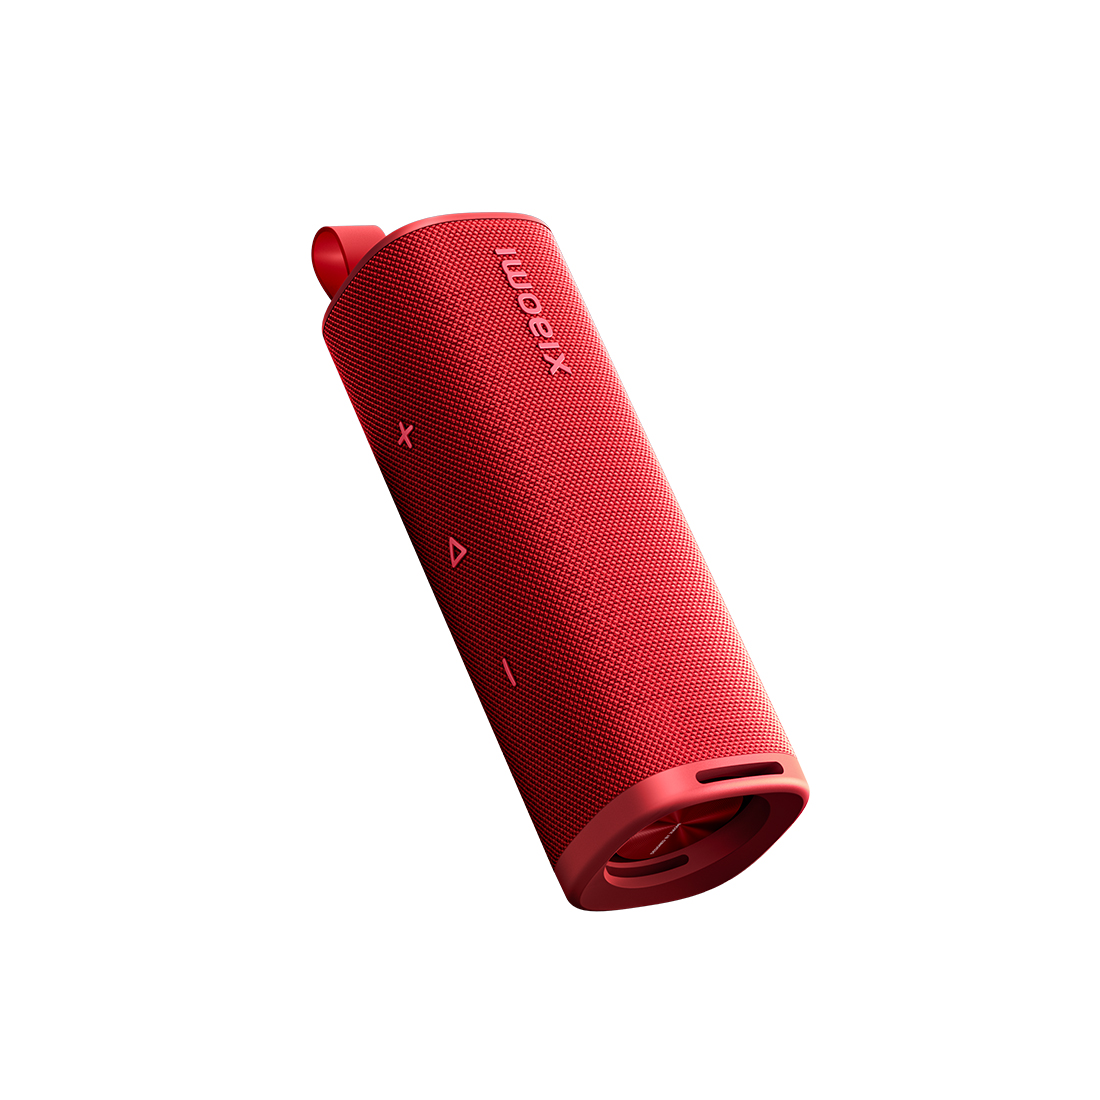 Портативная колонка Xiaomi Sound Outdoor 30W Red